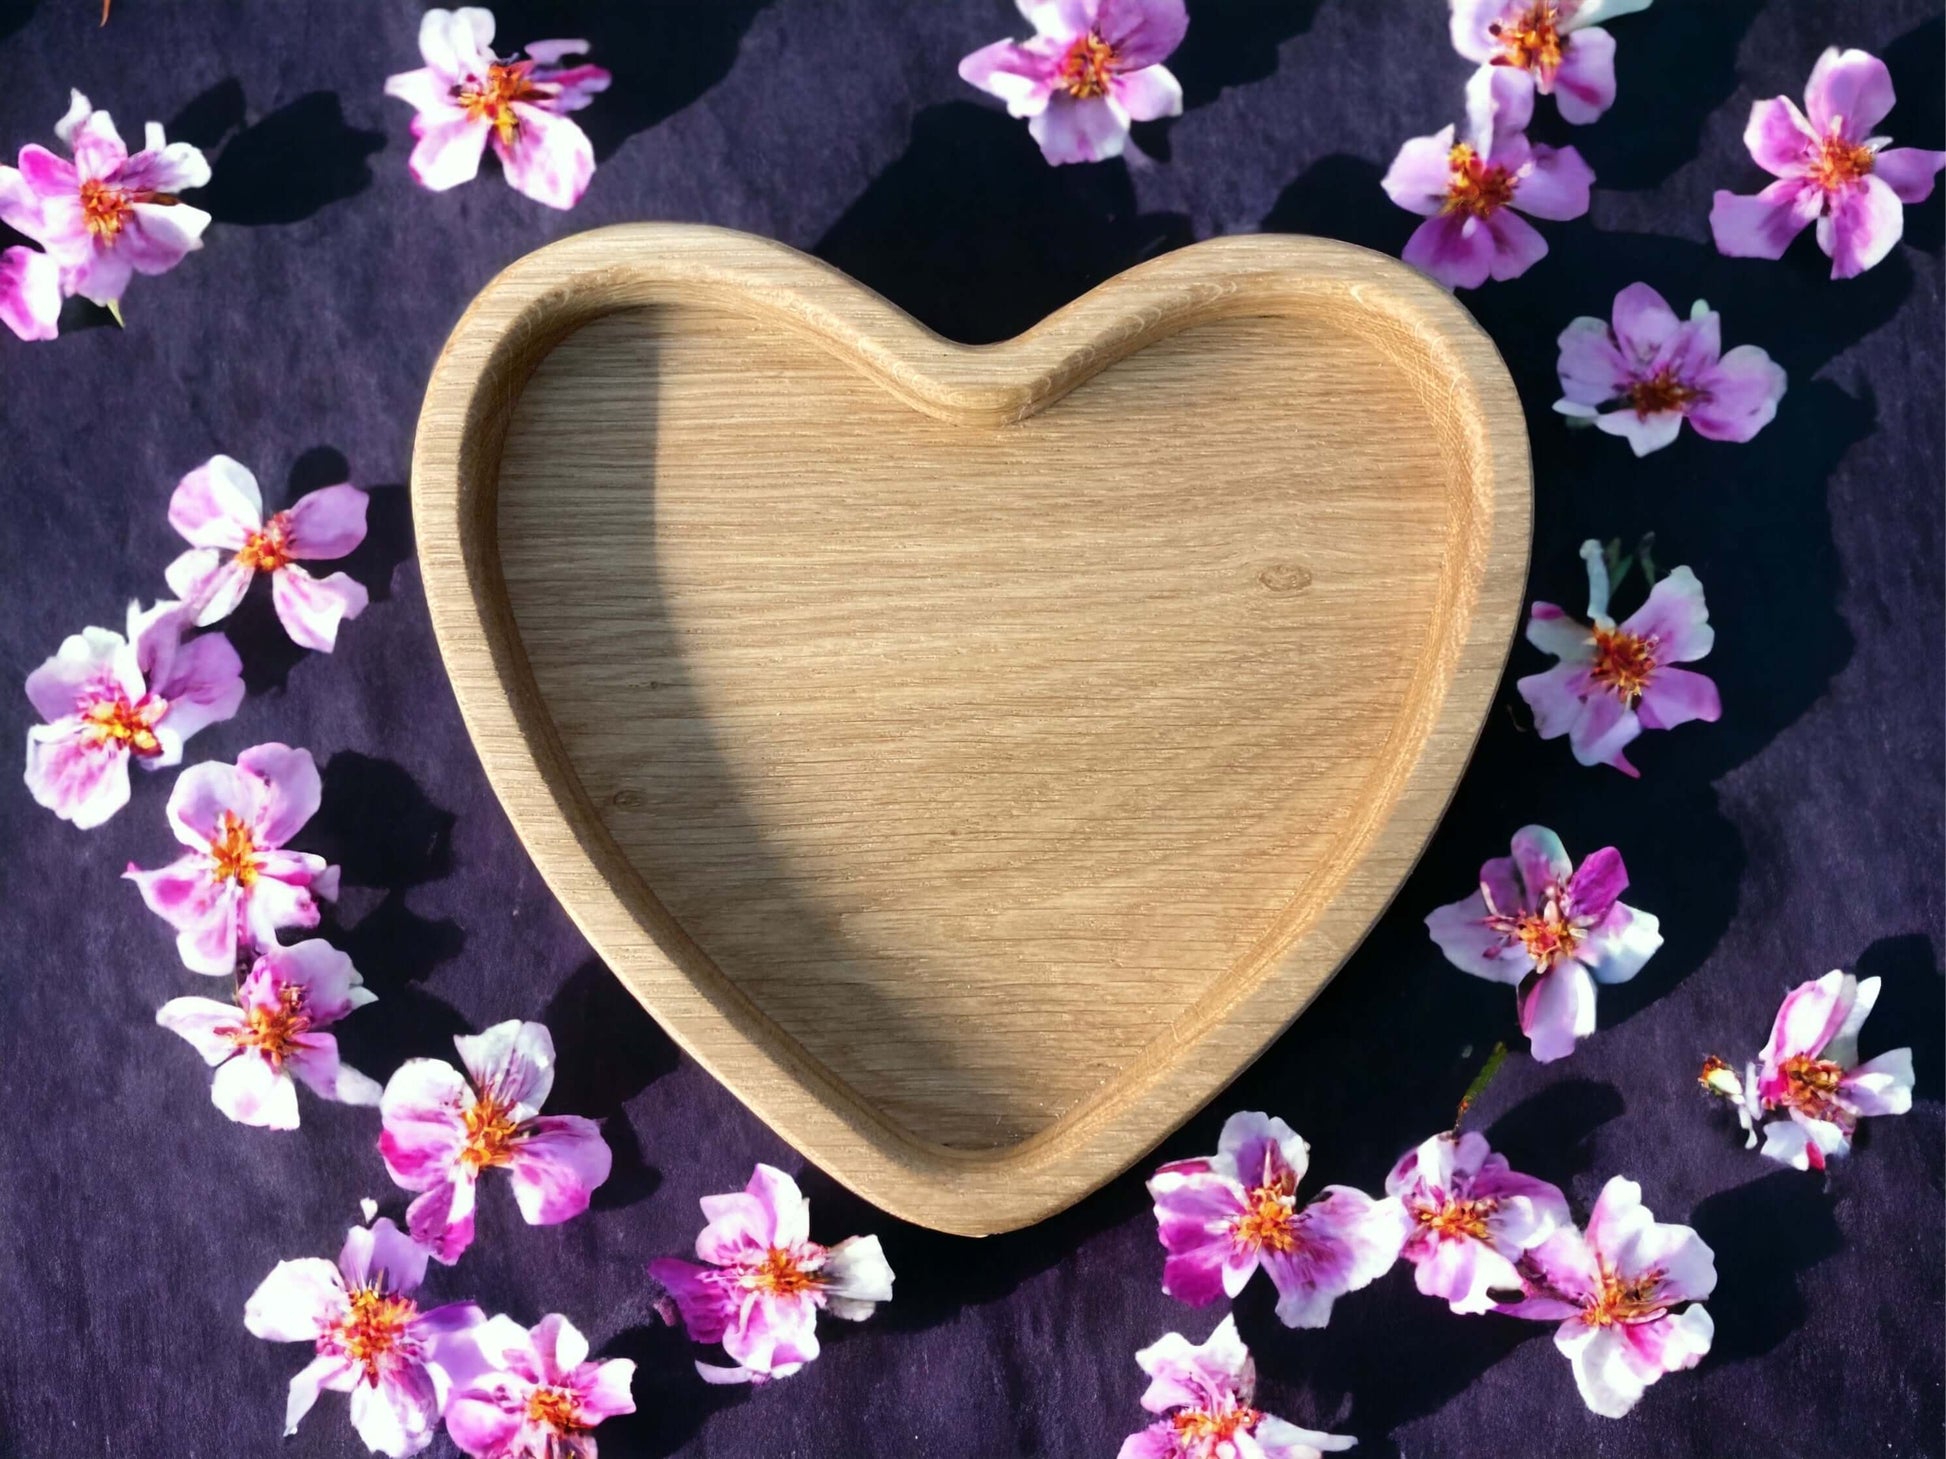  Drevená miska - Srdce 17,5 cm z masívneho dreva ošetrená olejom pre bezpečné použitie